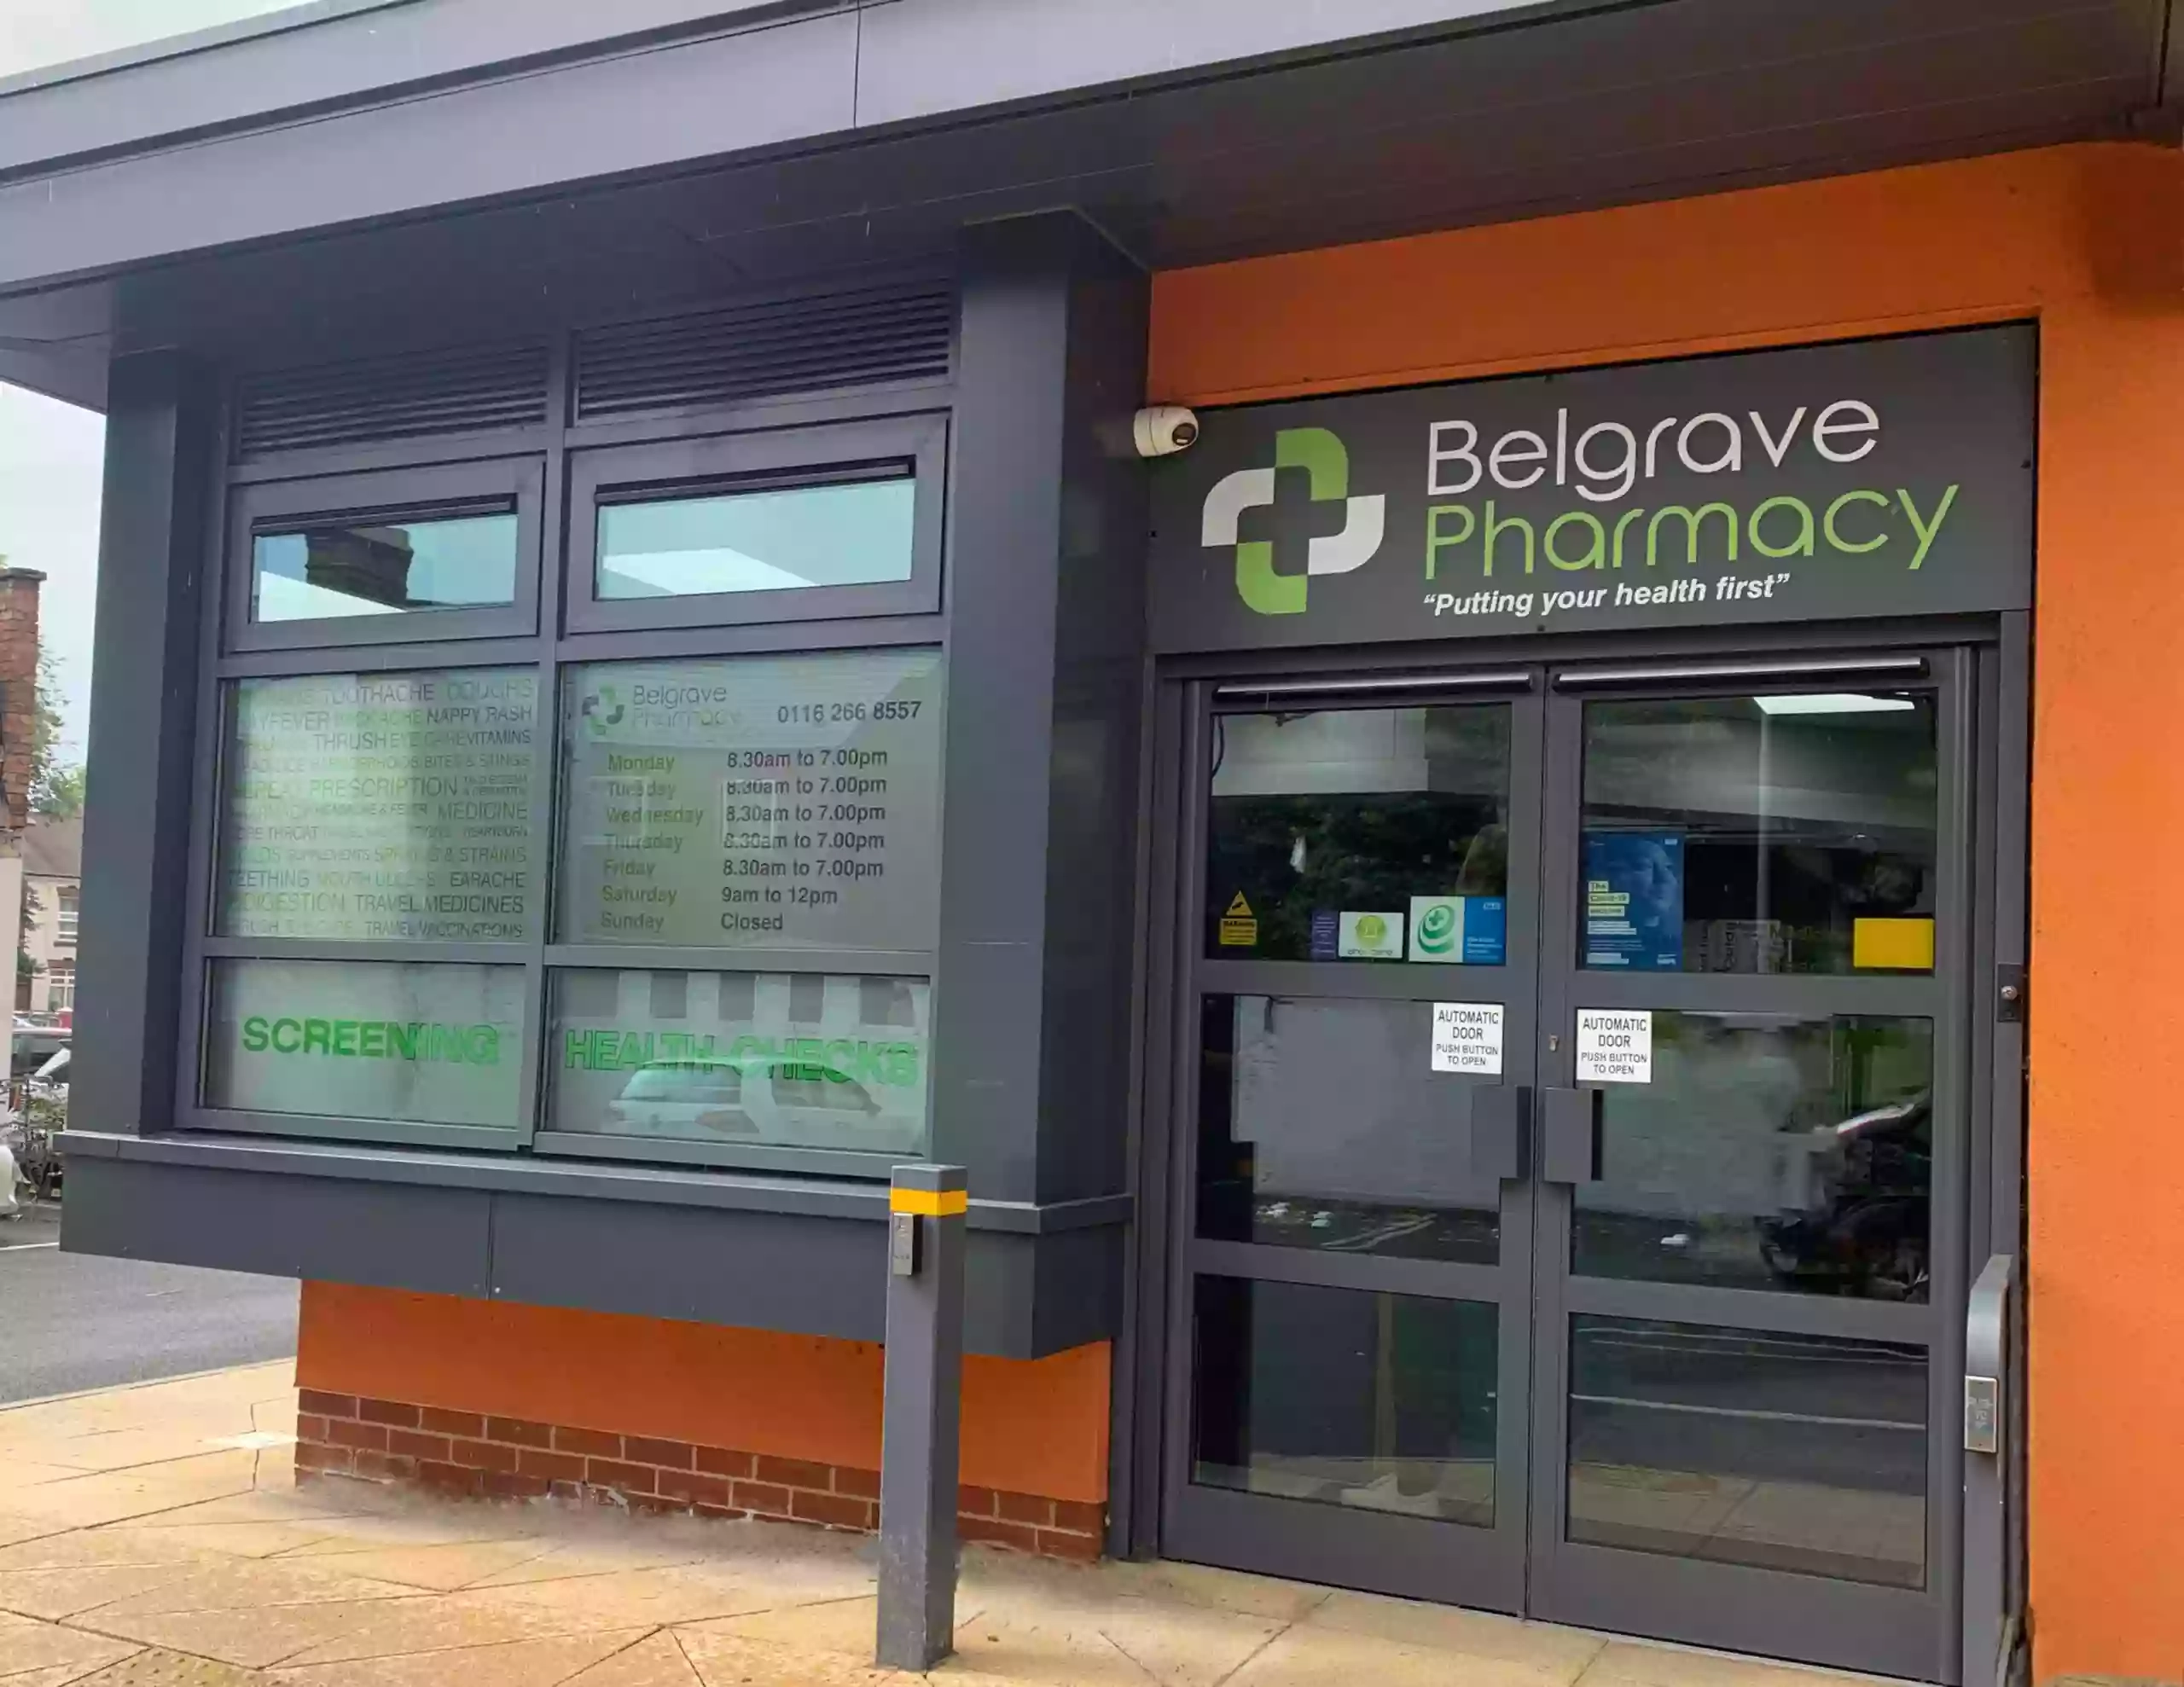 Belgrave Pharmacy